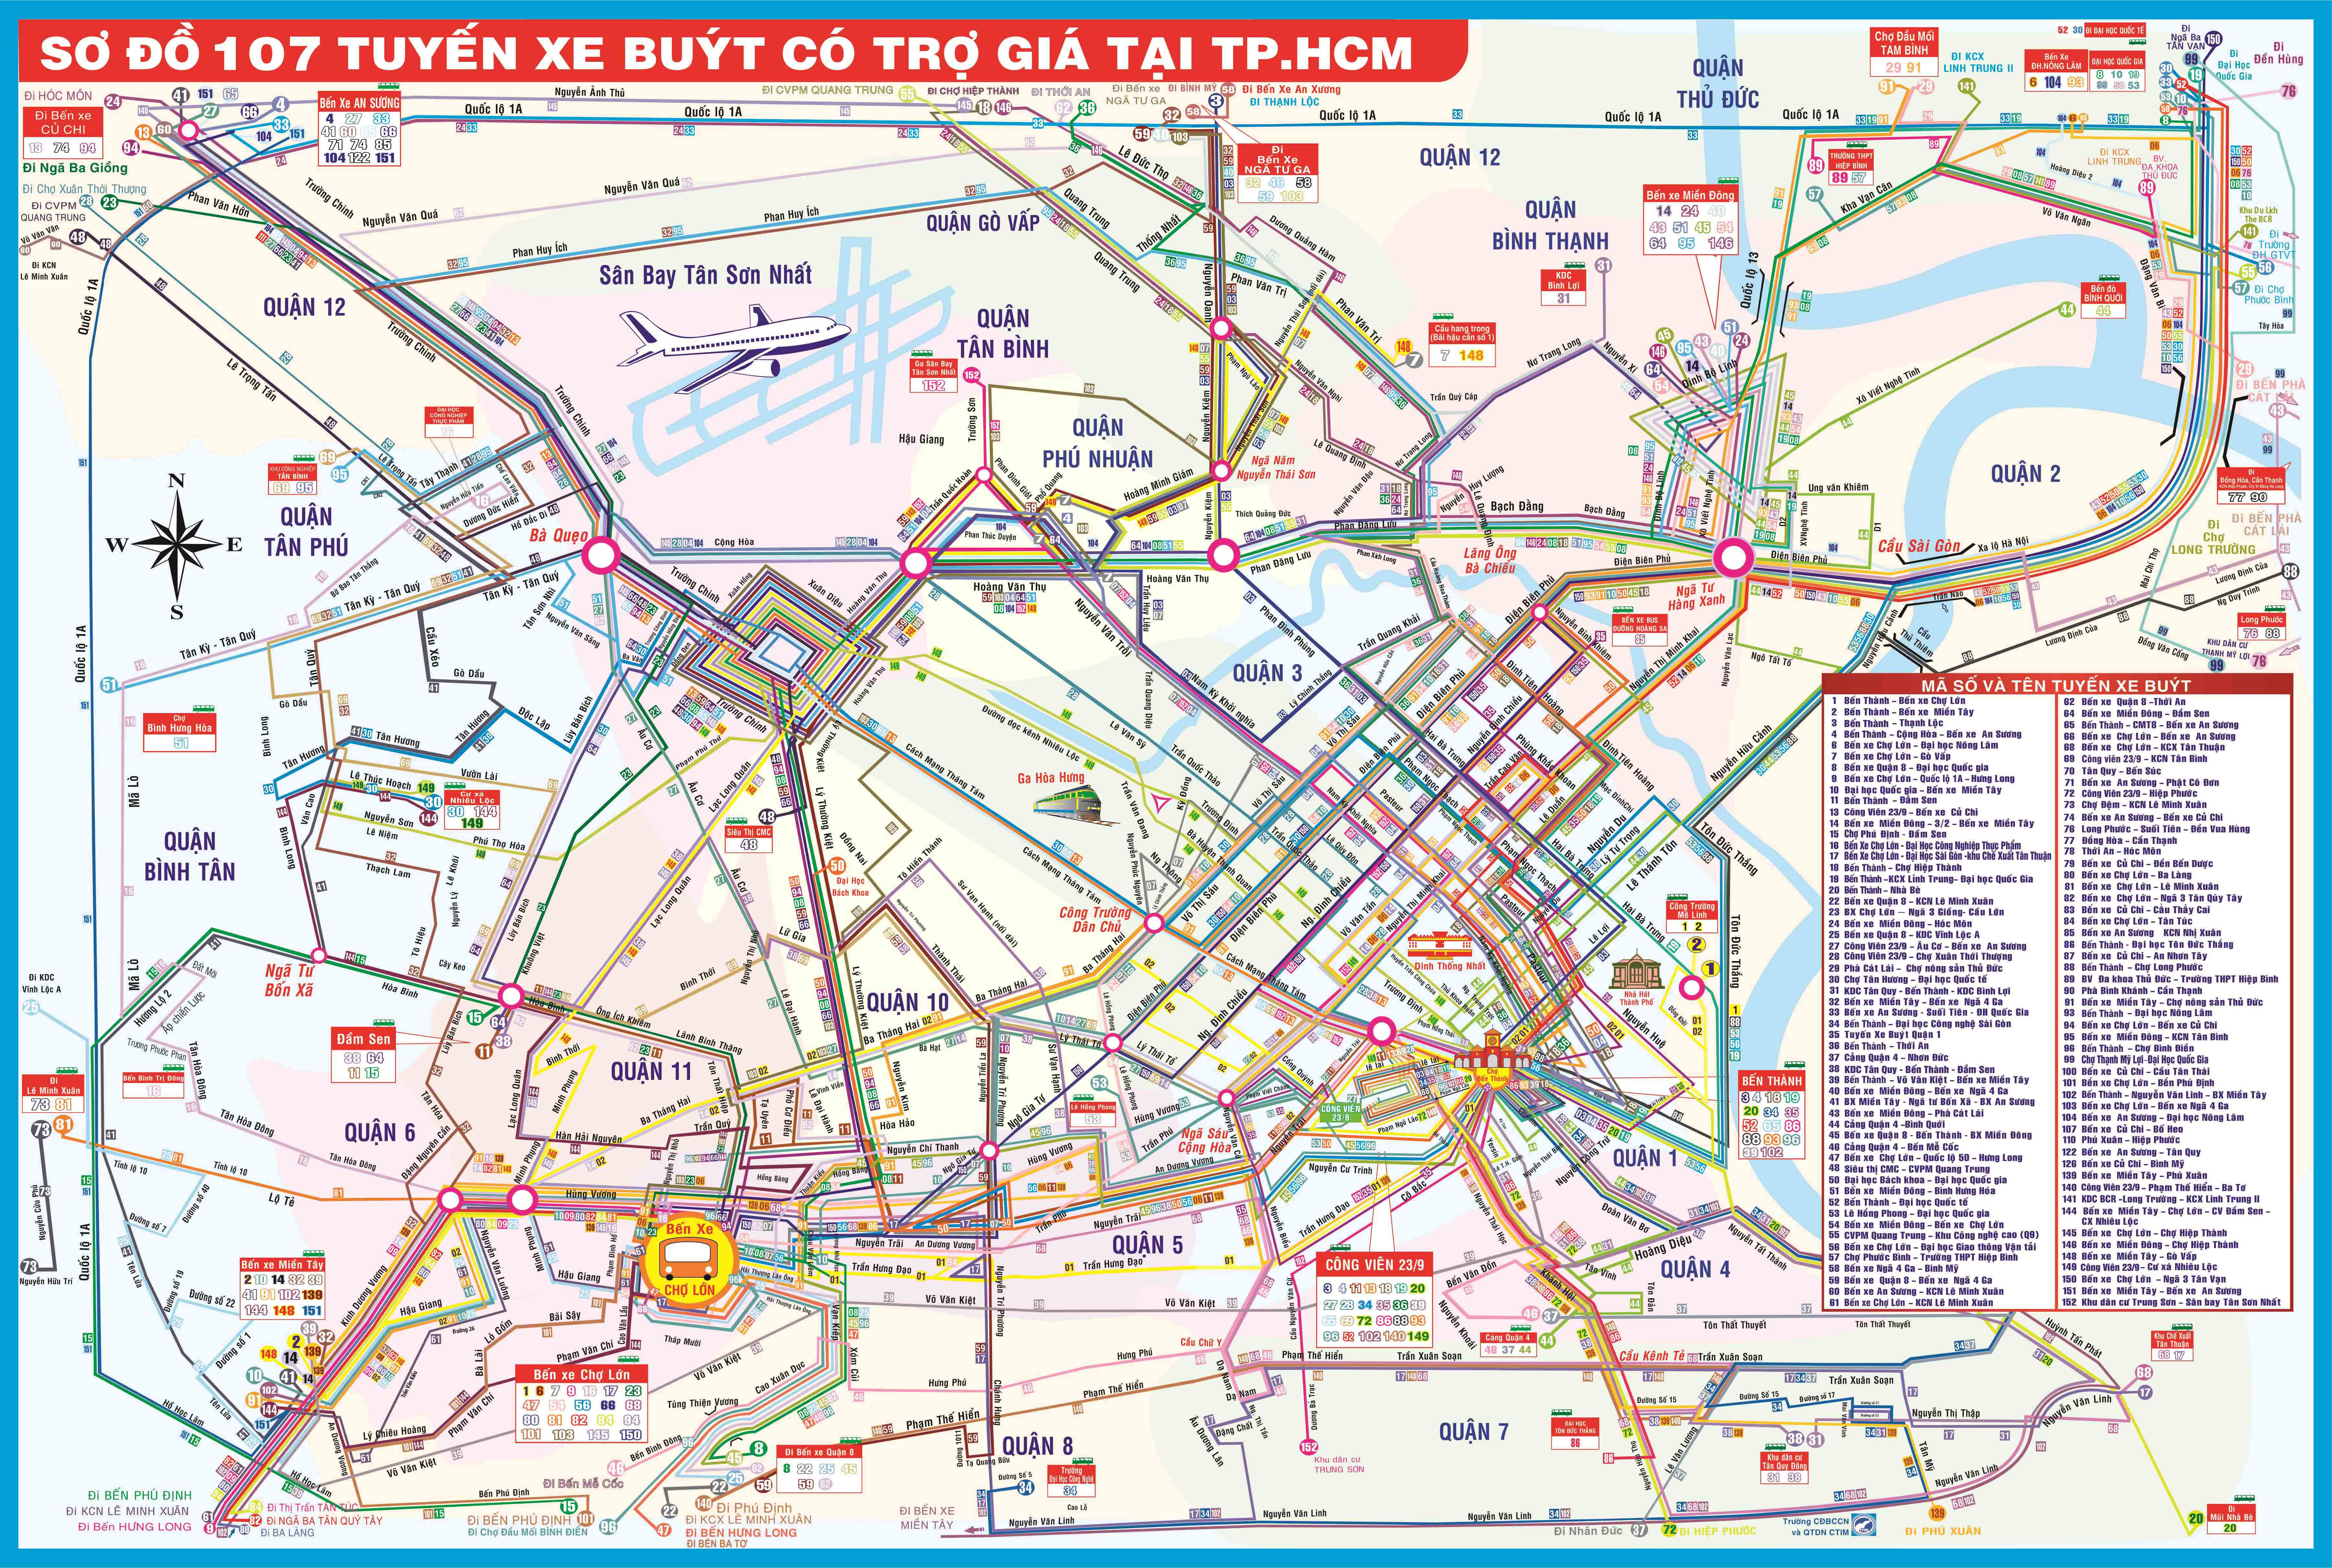 Bản đồ các tuyến xe buýt thành phố Hồ Chí Minh - Sài Gòn